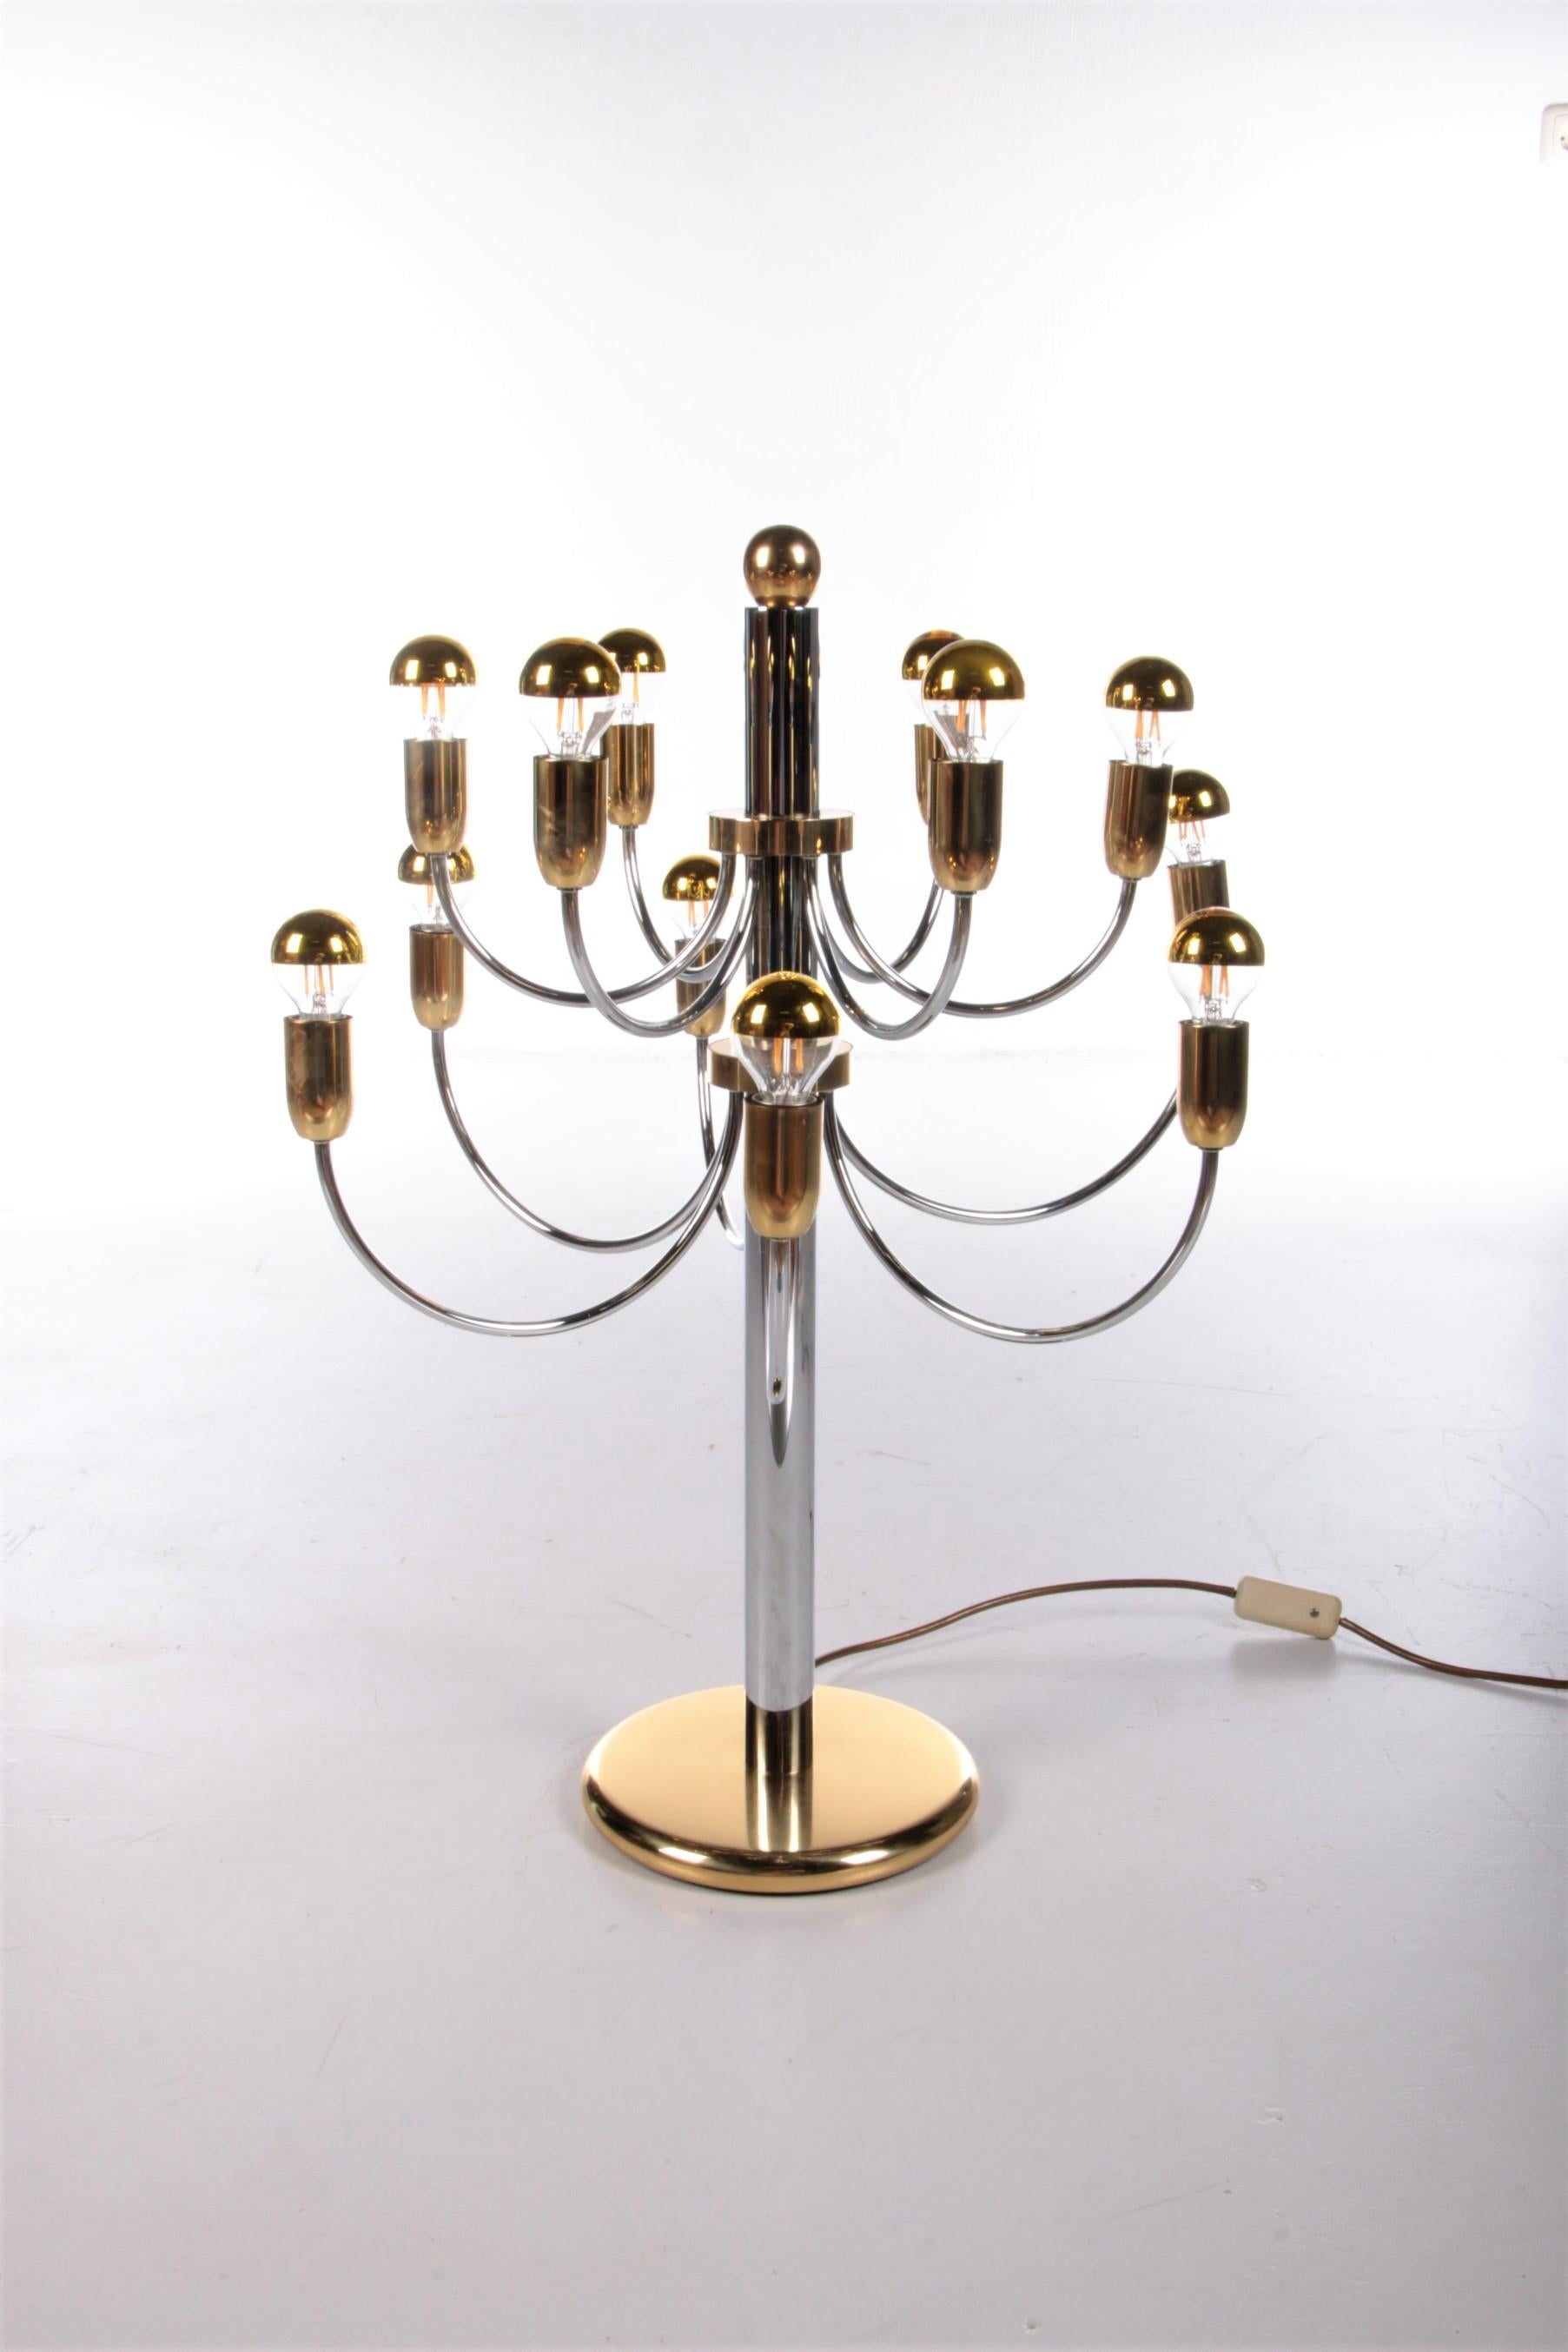 Klassische italienische Tischlampe Hollywood Regency, 1960


Sehr schöne Design-Lampe scheint ein Entwurf von Gaetano Sciolari zu sein.

Diese von der Natur inspirierte Lampe ist ein seltenes Exemplar und folgt den Linien der Pistillino-Lampe, die